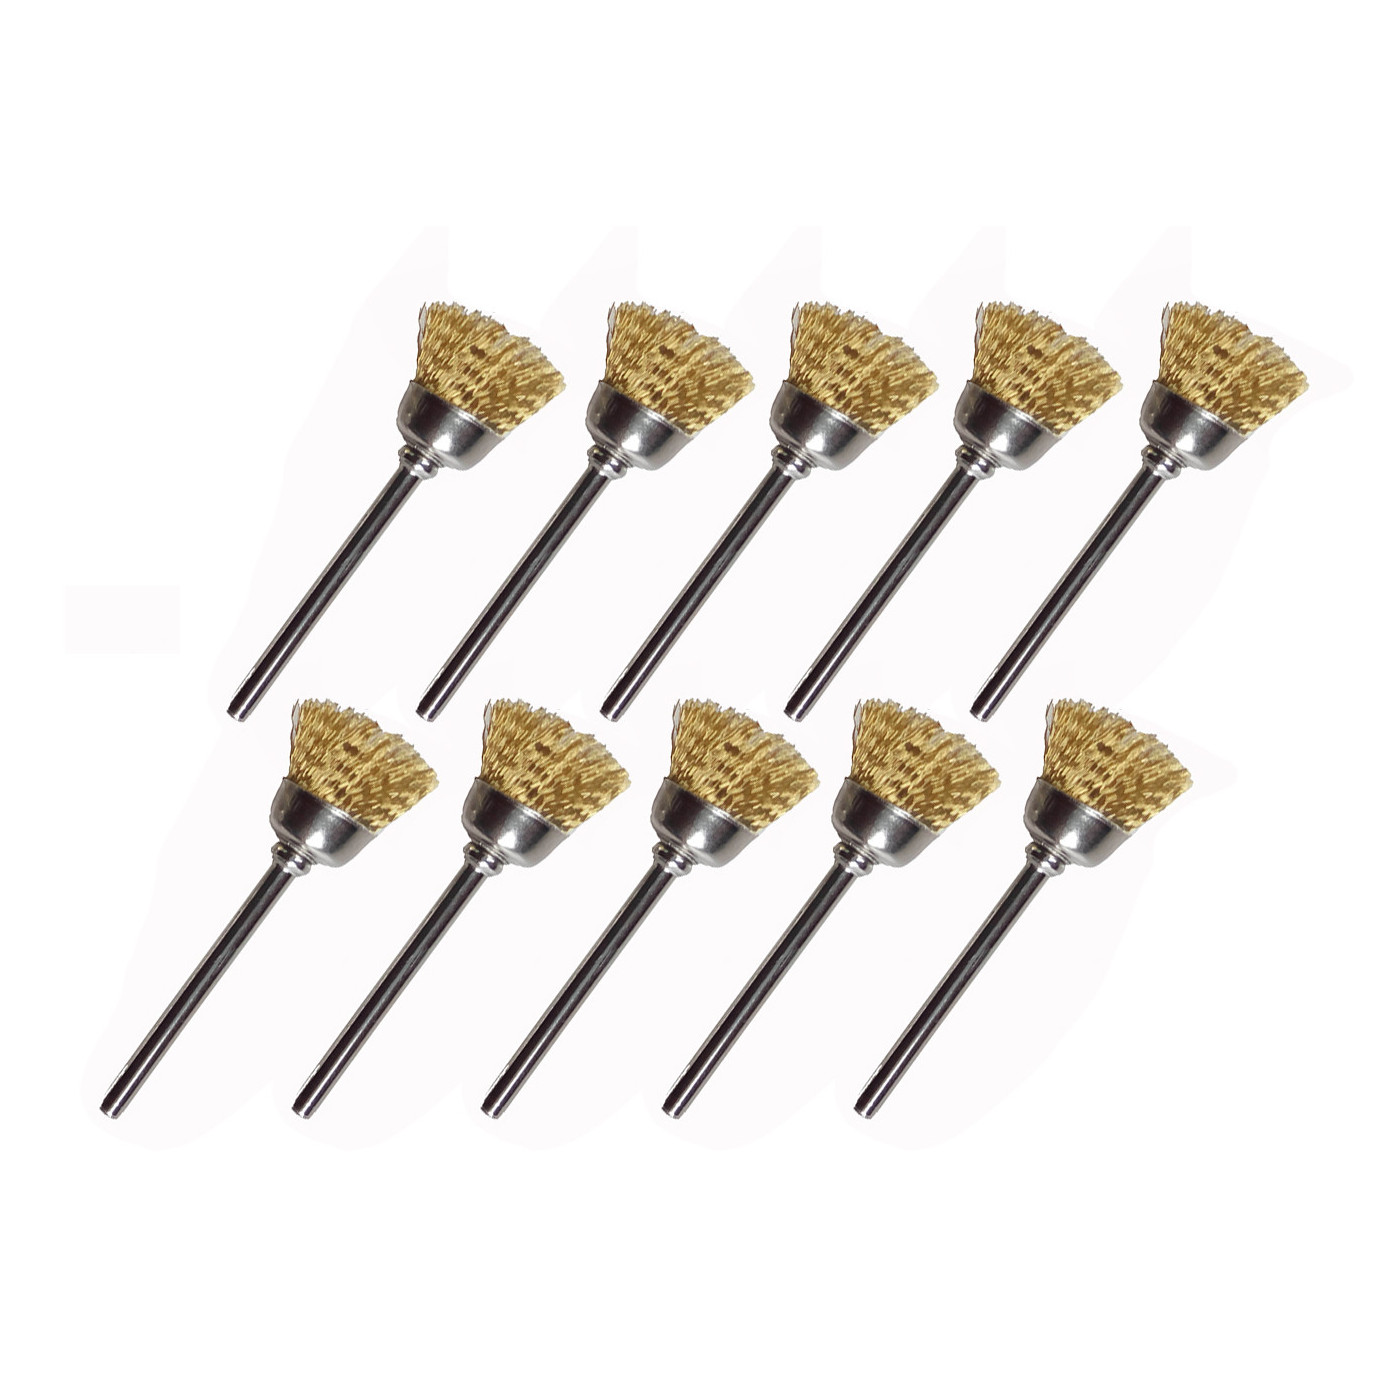 Set von 30 Metalldrahtbürsten (Messing), Regenschirm, 3,175 mm